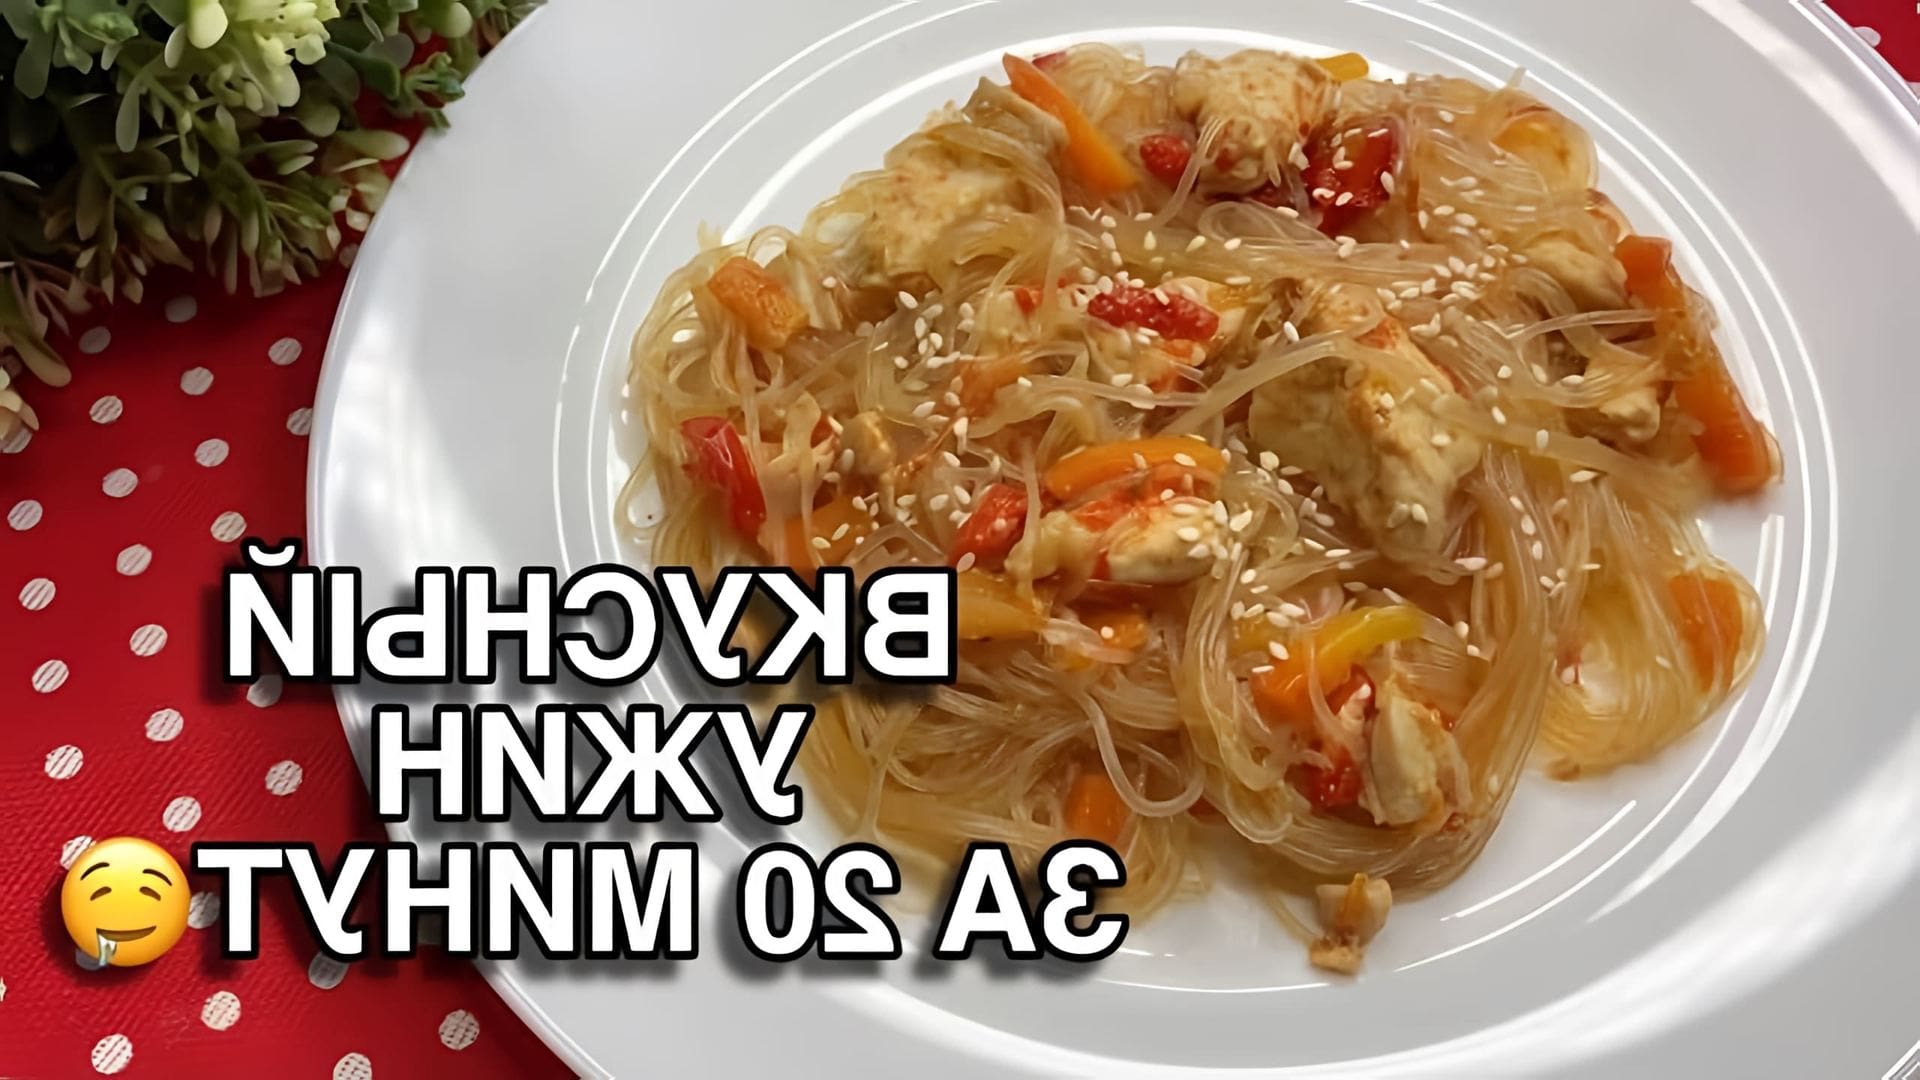 В этом видео демонстрируется рецепт приготовления фунчозы с курицей и овощами